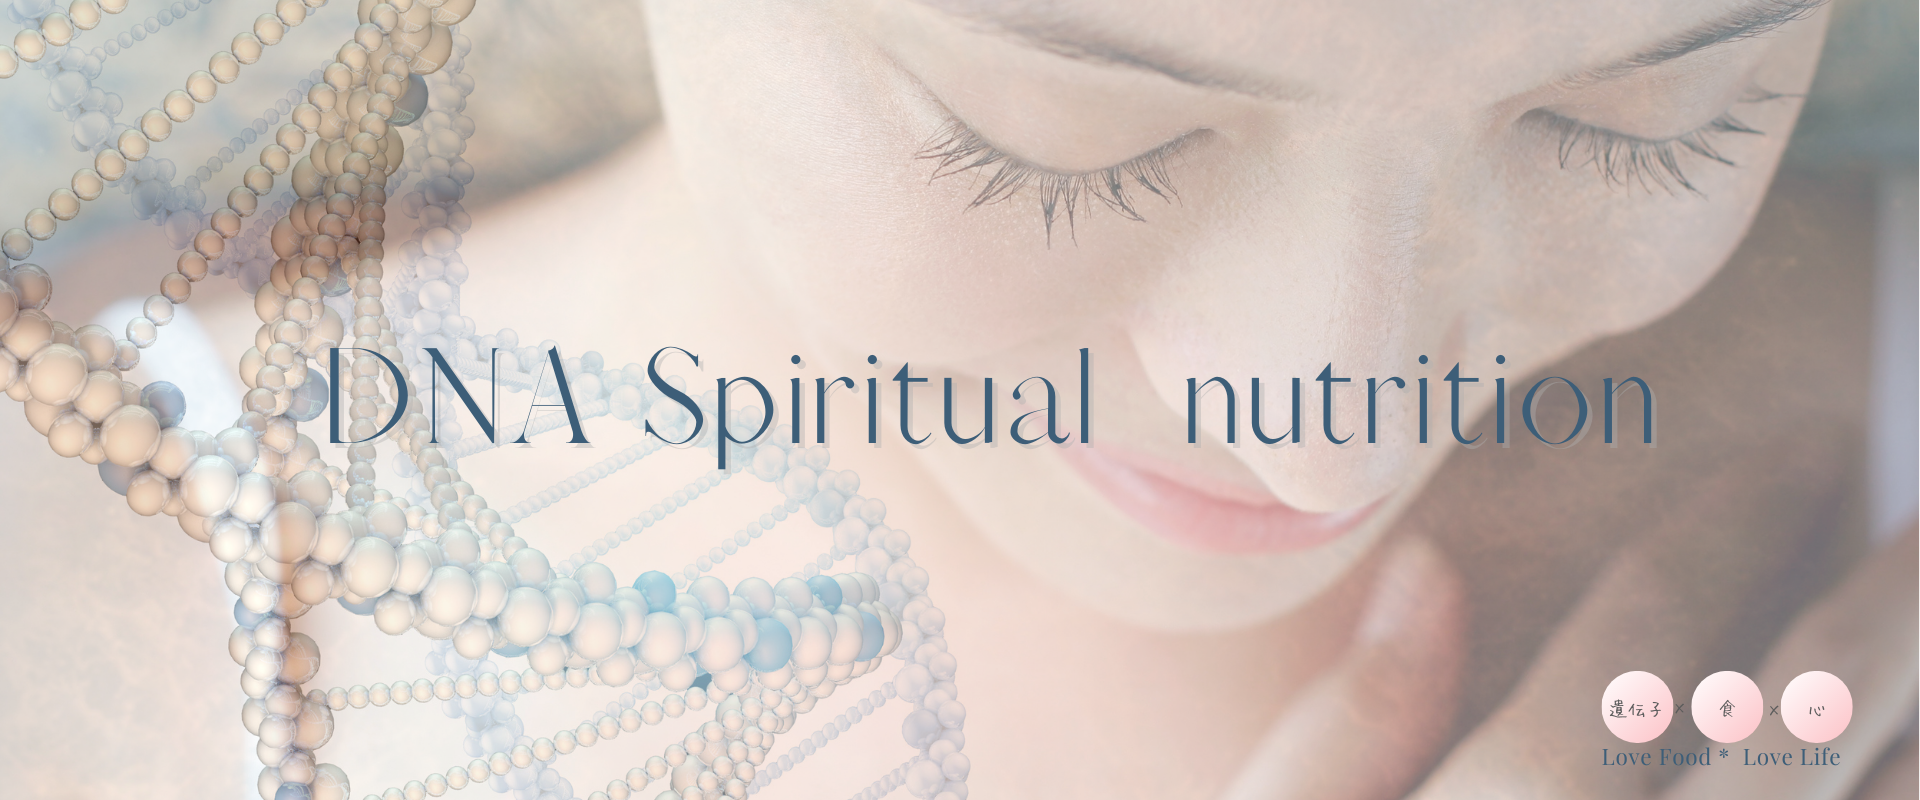 DNA spiritual nutrition